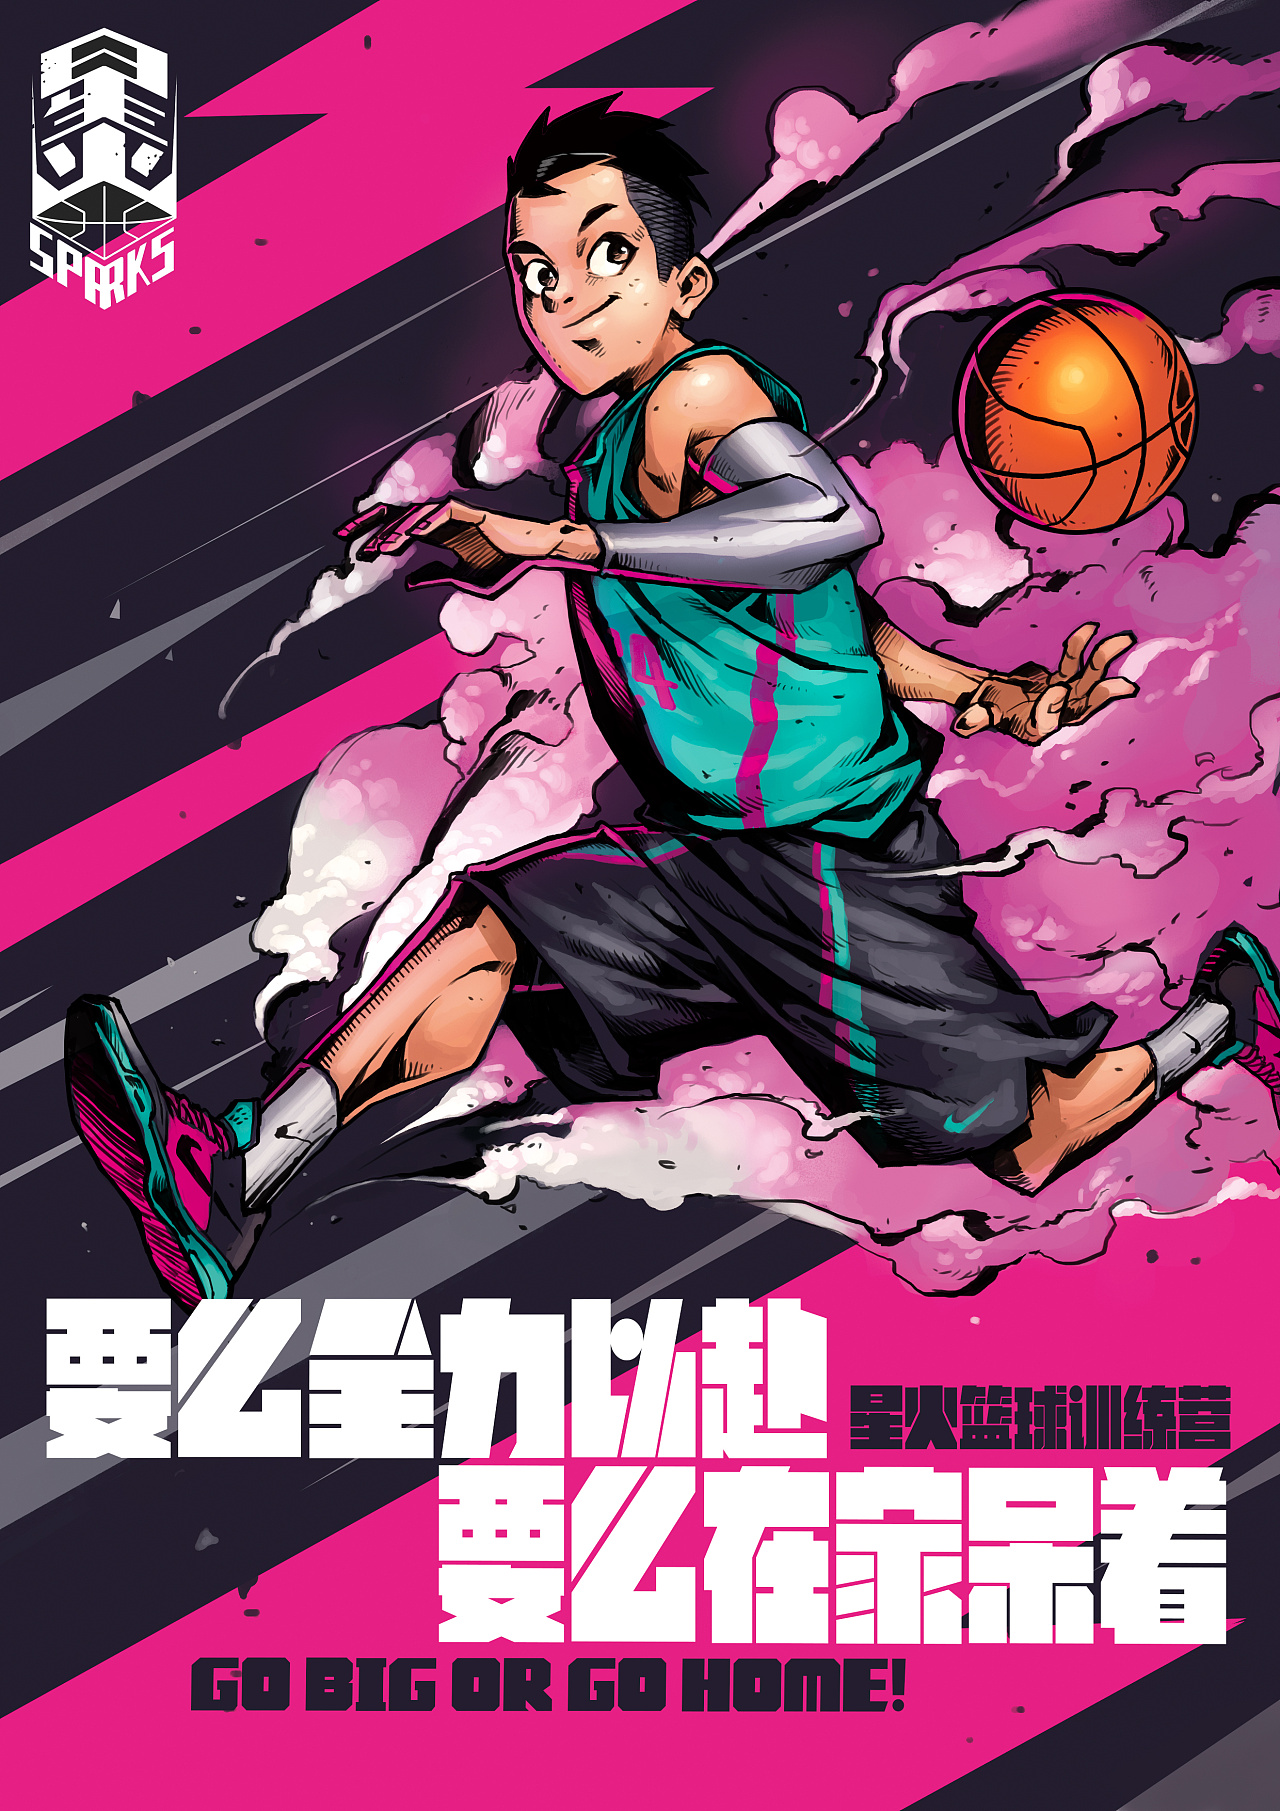 卡通版篮球比赛宣传海报图片下载 - 觅知网